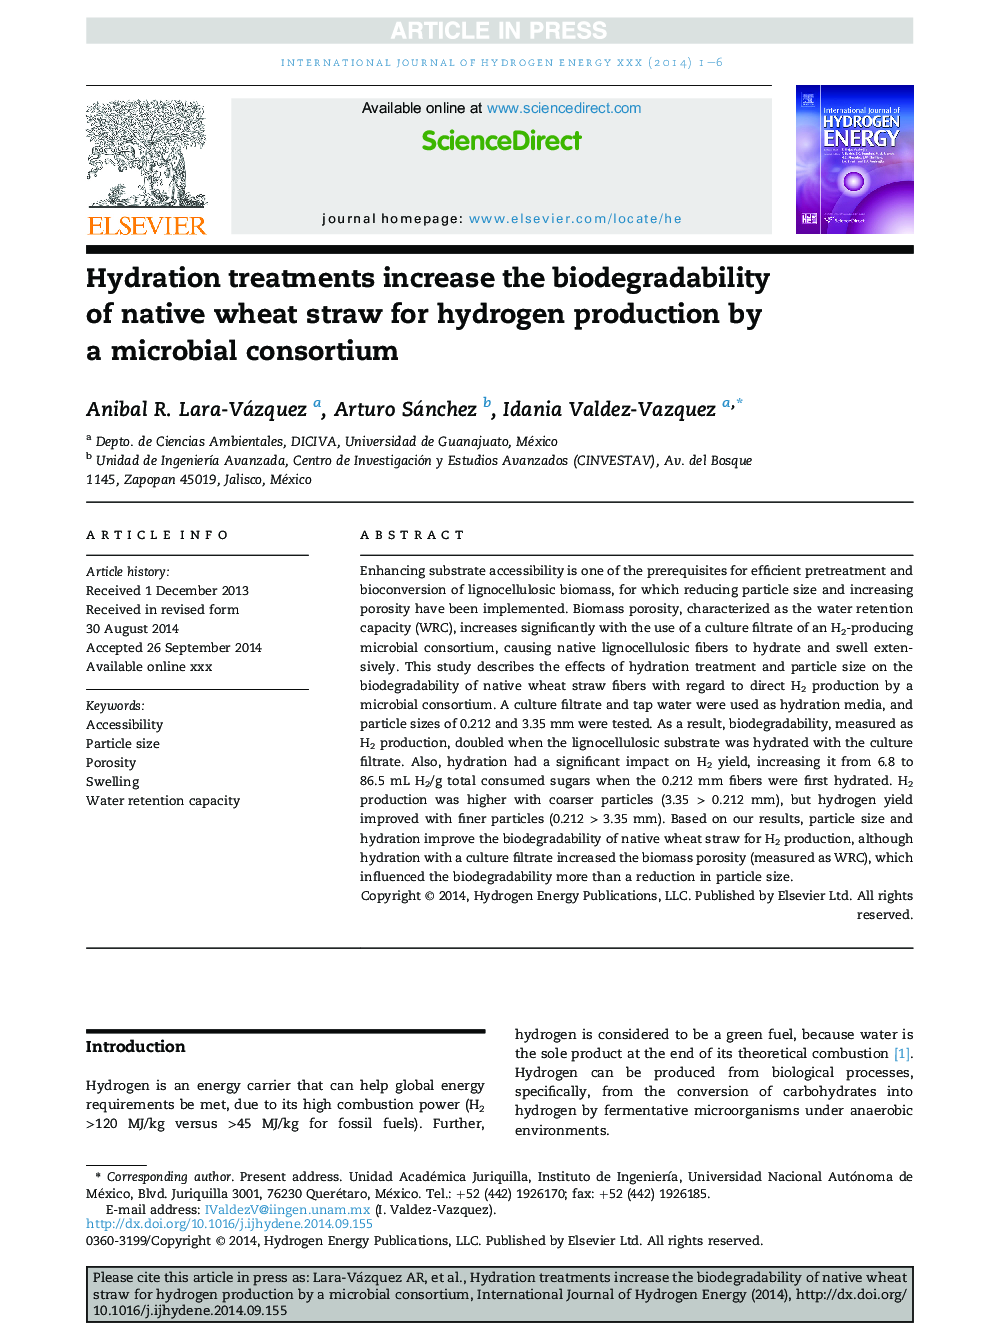 درمان های هیدراتاسیون زیست تخریب پذیری کاه گندم بومی برای تولید هیدروژن توسط یک کنسرسیوم میکروبی افزایش می یابد 